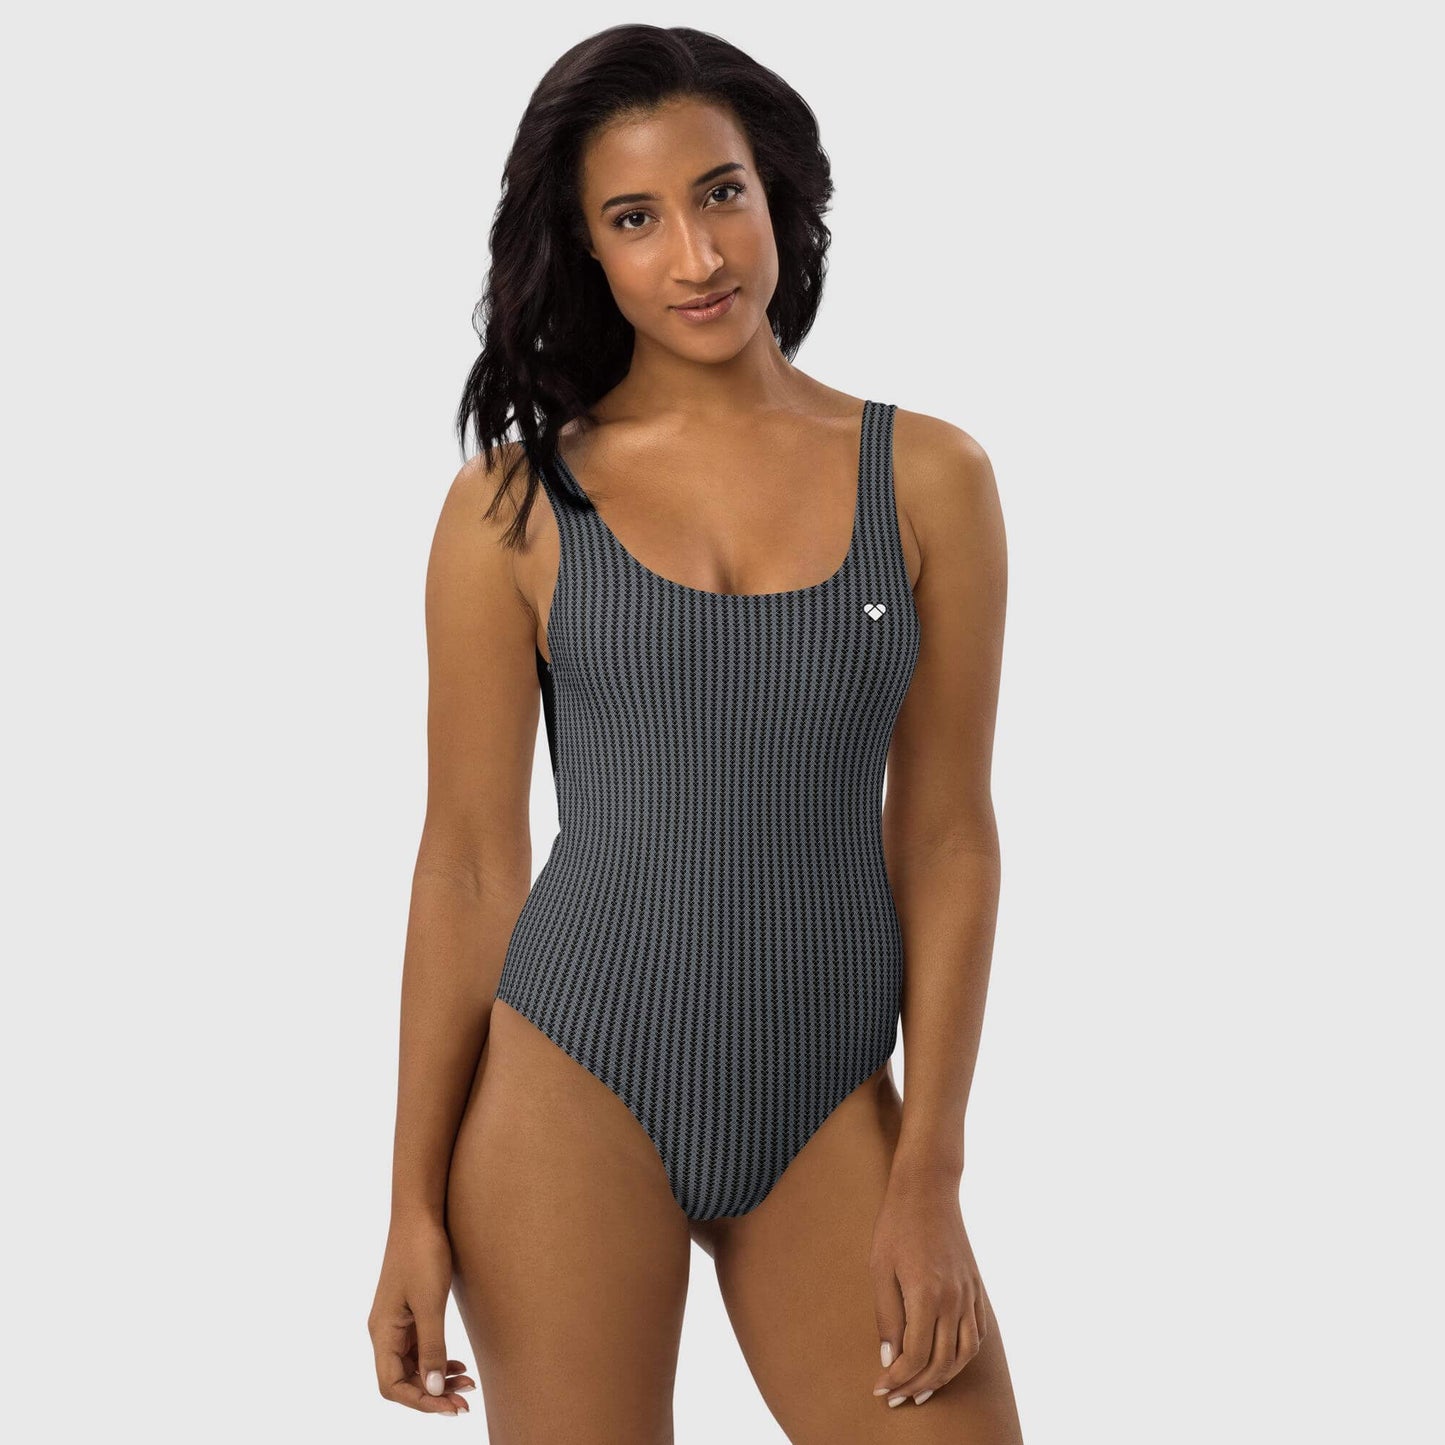 Designer Women's Beachwear: CRiZ AMOR's Empowering Lovogram Swimsuit